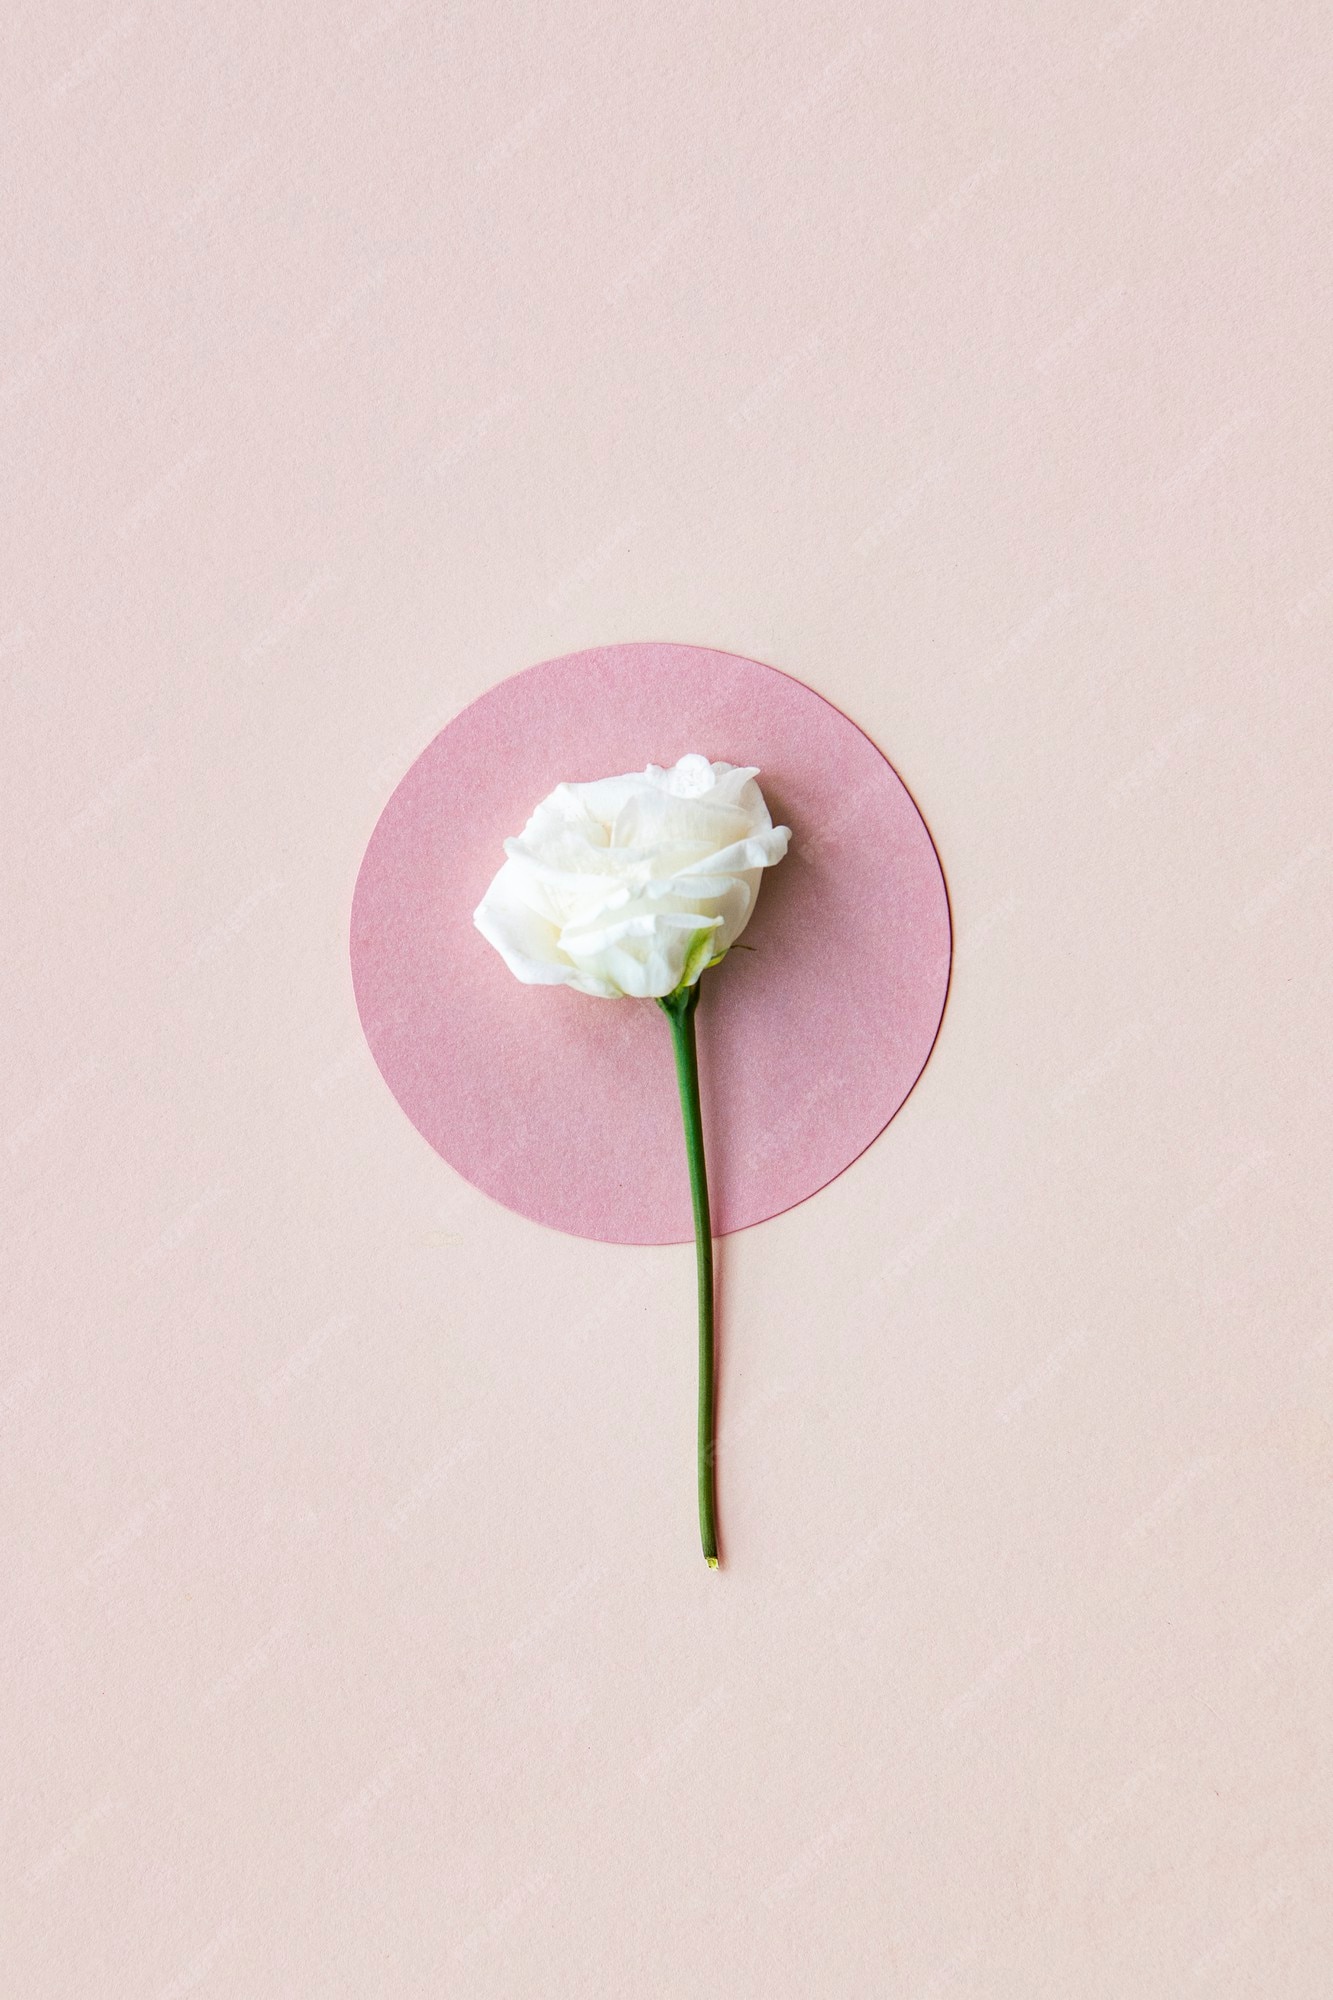 Hoa lisianthus trắng trên nền hồng sẽ tạo nên một tác phẩm nghệ thuật tuyệt đẹp. Các hình ảnh sẽ khiến bạn muốn chiêm ngưỡng nó ngay tức thì.